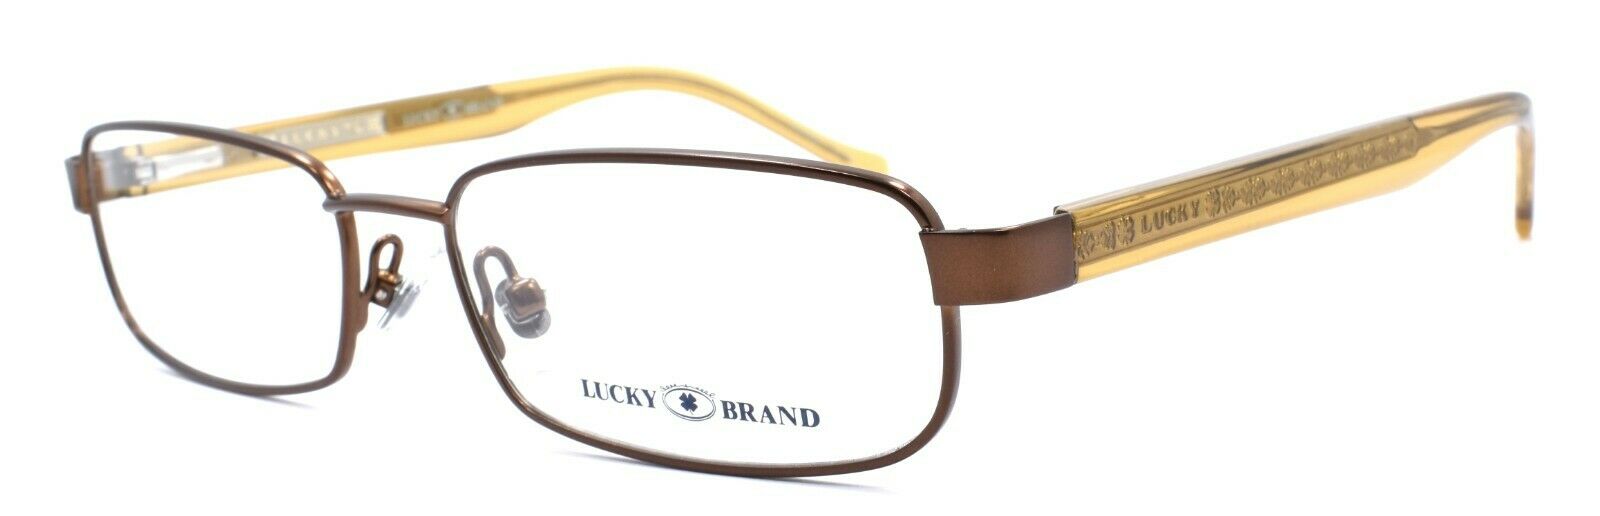 1-LUCKY BRAND Zipper Eyeglasses Frames SMALL 50-15-130 Brown + CASE-751286226980-IKSpecs